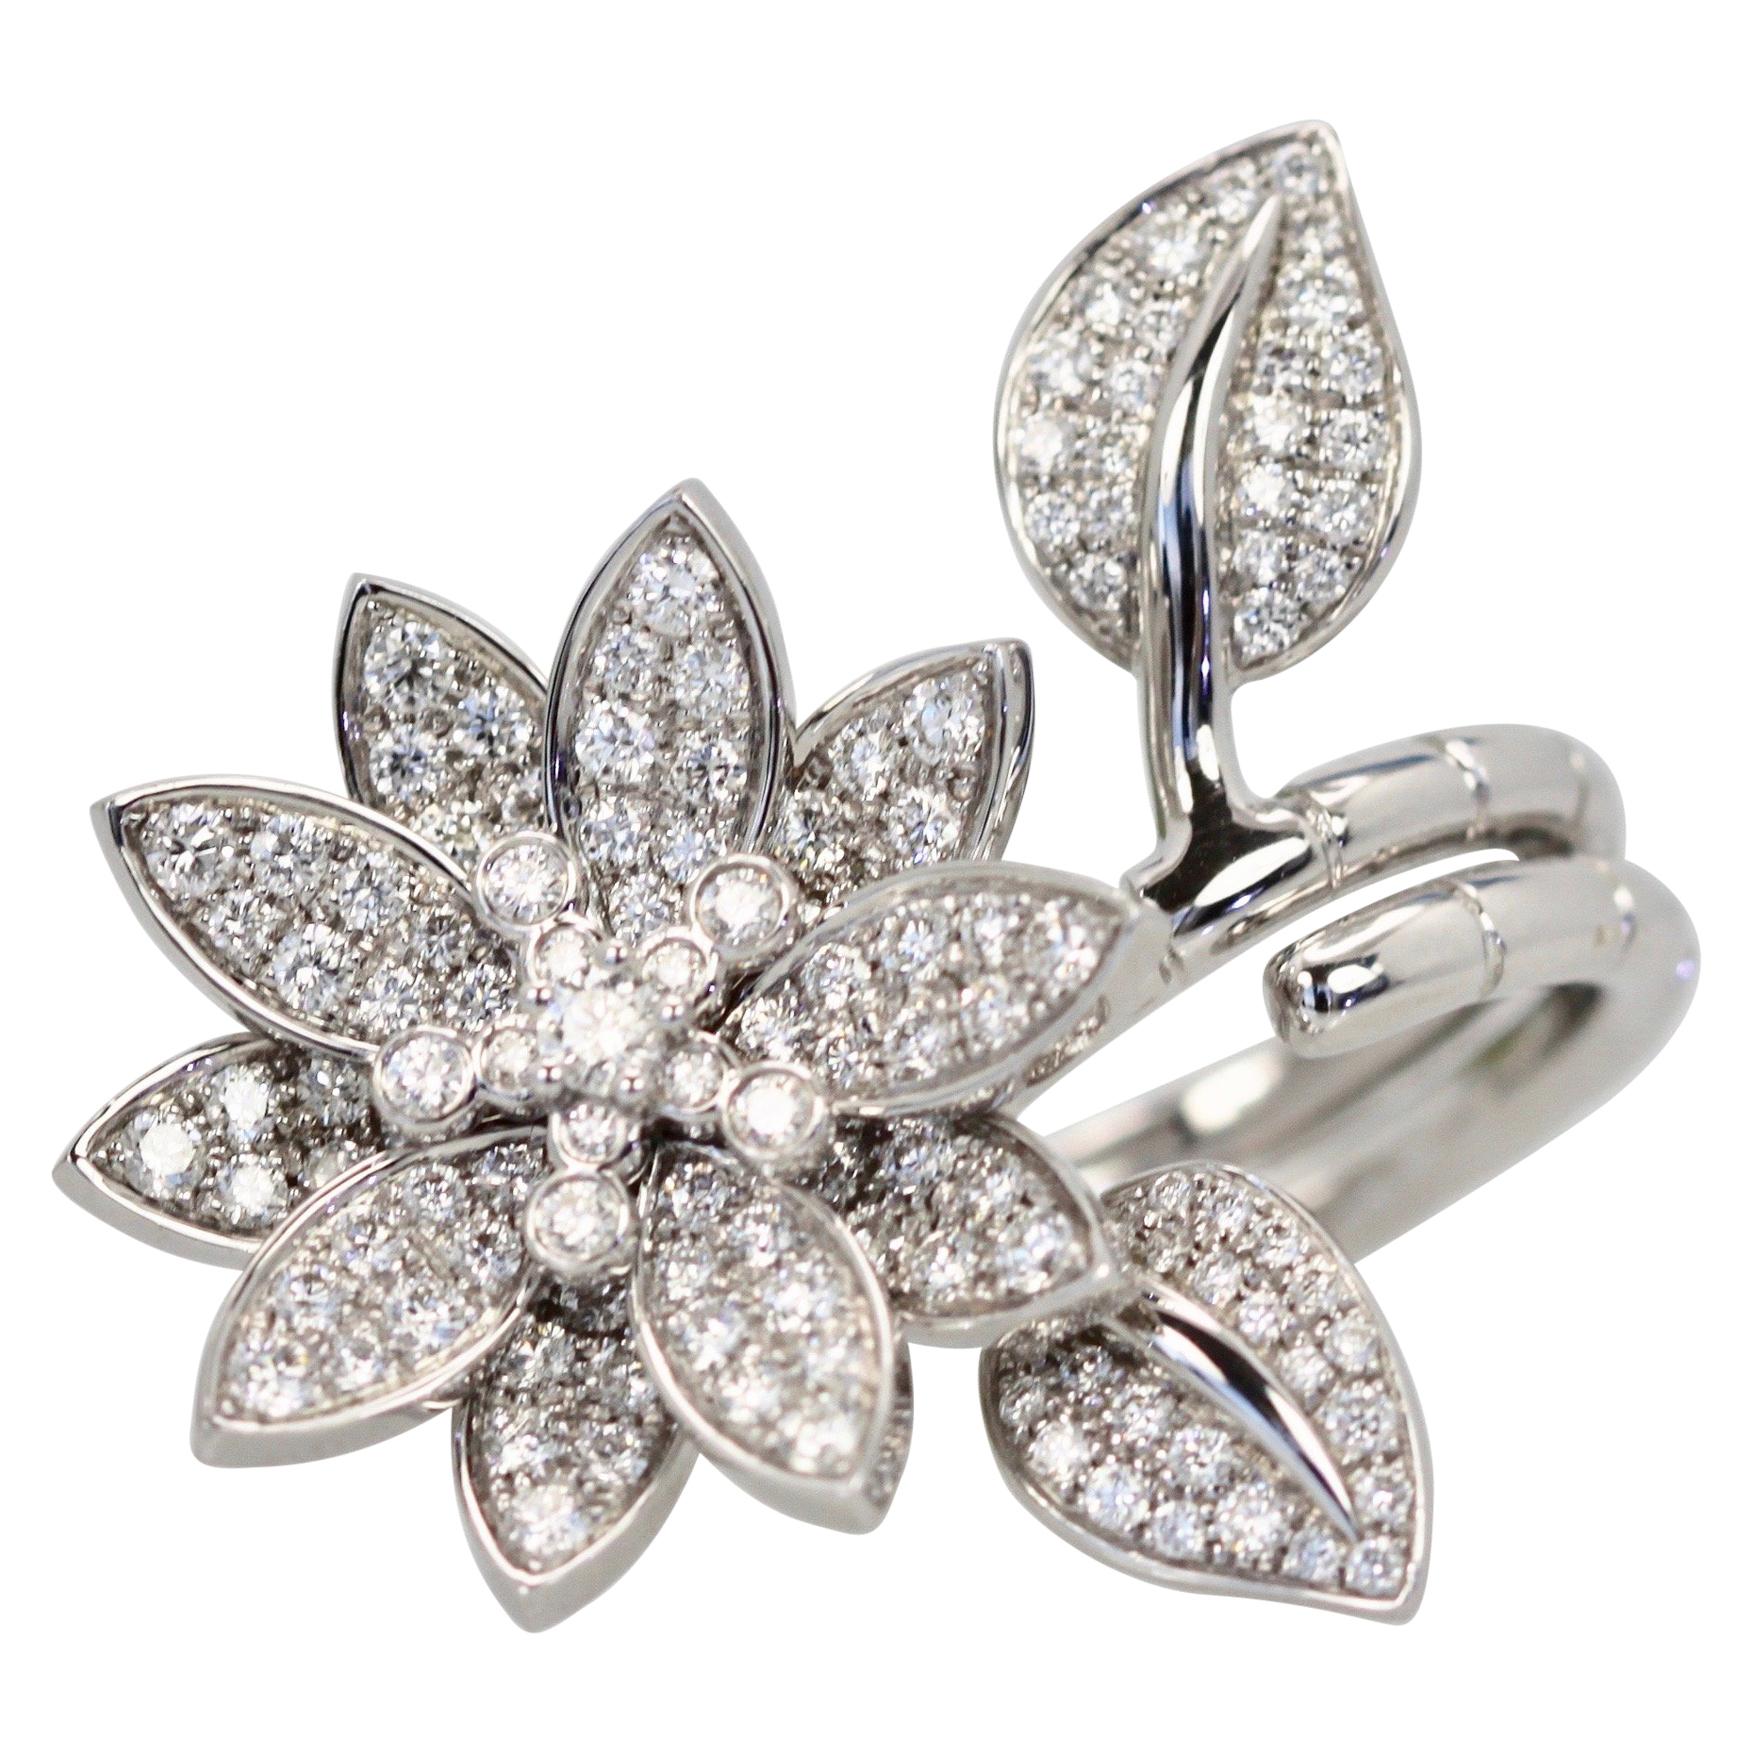 Van Cleef & Arpels Diamond Lotus Ring